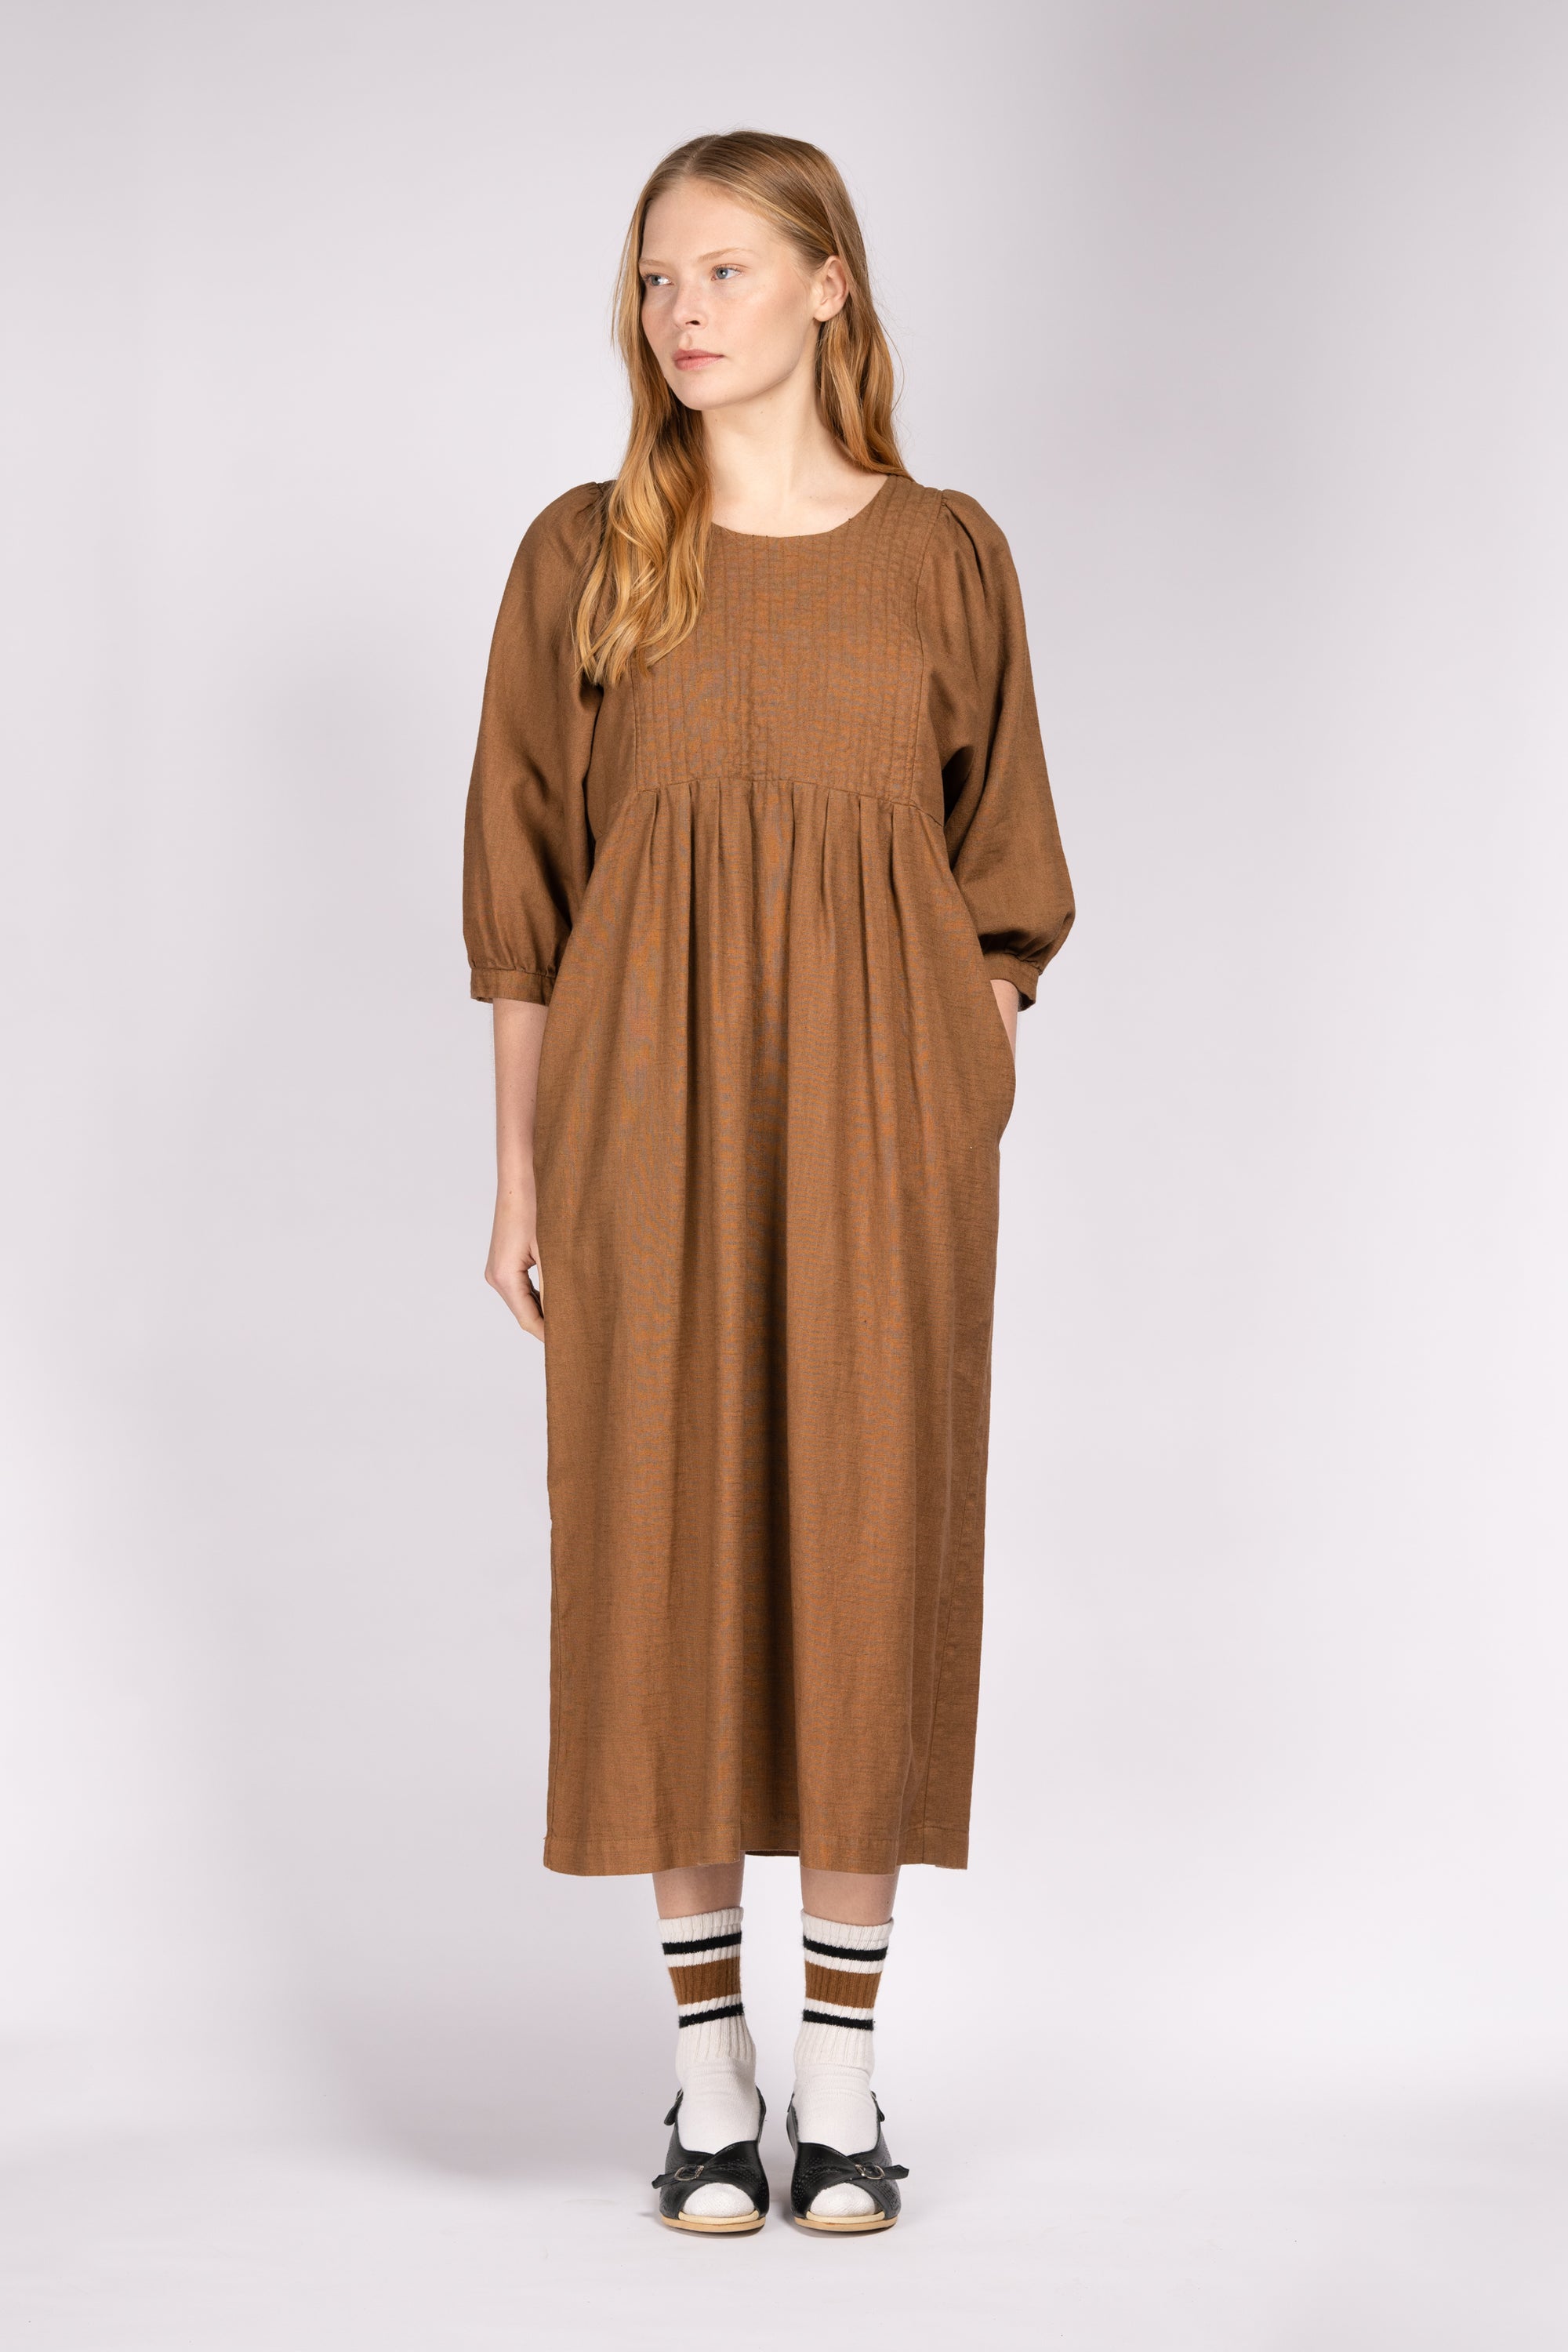 Quilt Dress - Wholewheat Linen